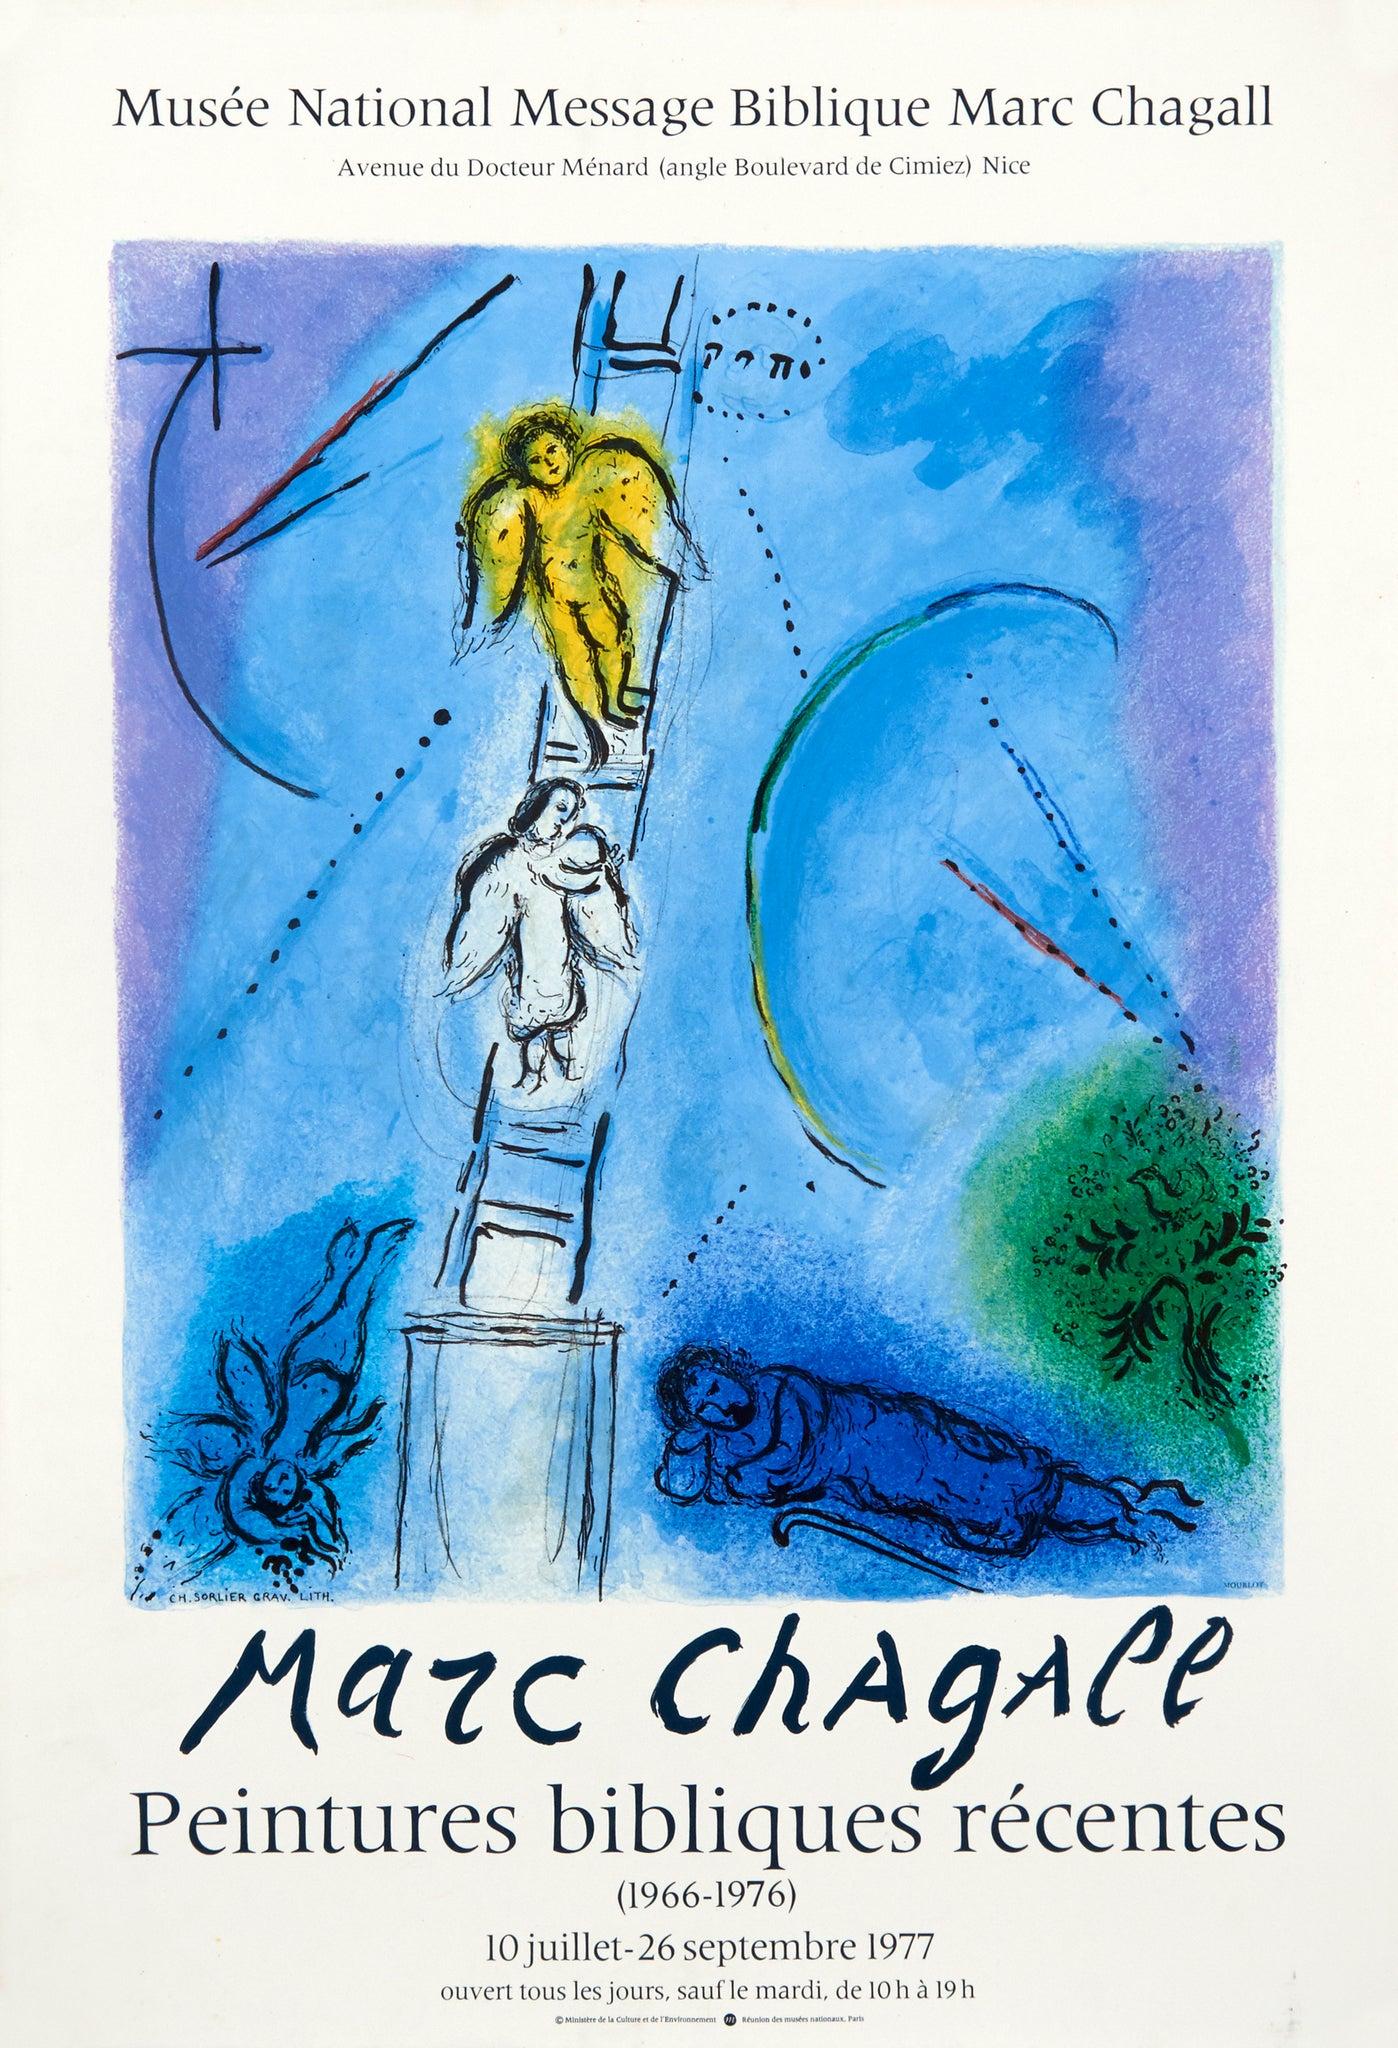 Künstler: Marc Chagall

Medium: Lithografisches Plakat, 1977

Abmessungen: 30 x 20,75 Zoll, 76,2 x 52,7 cm 